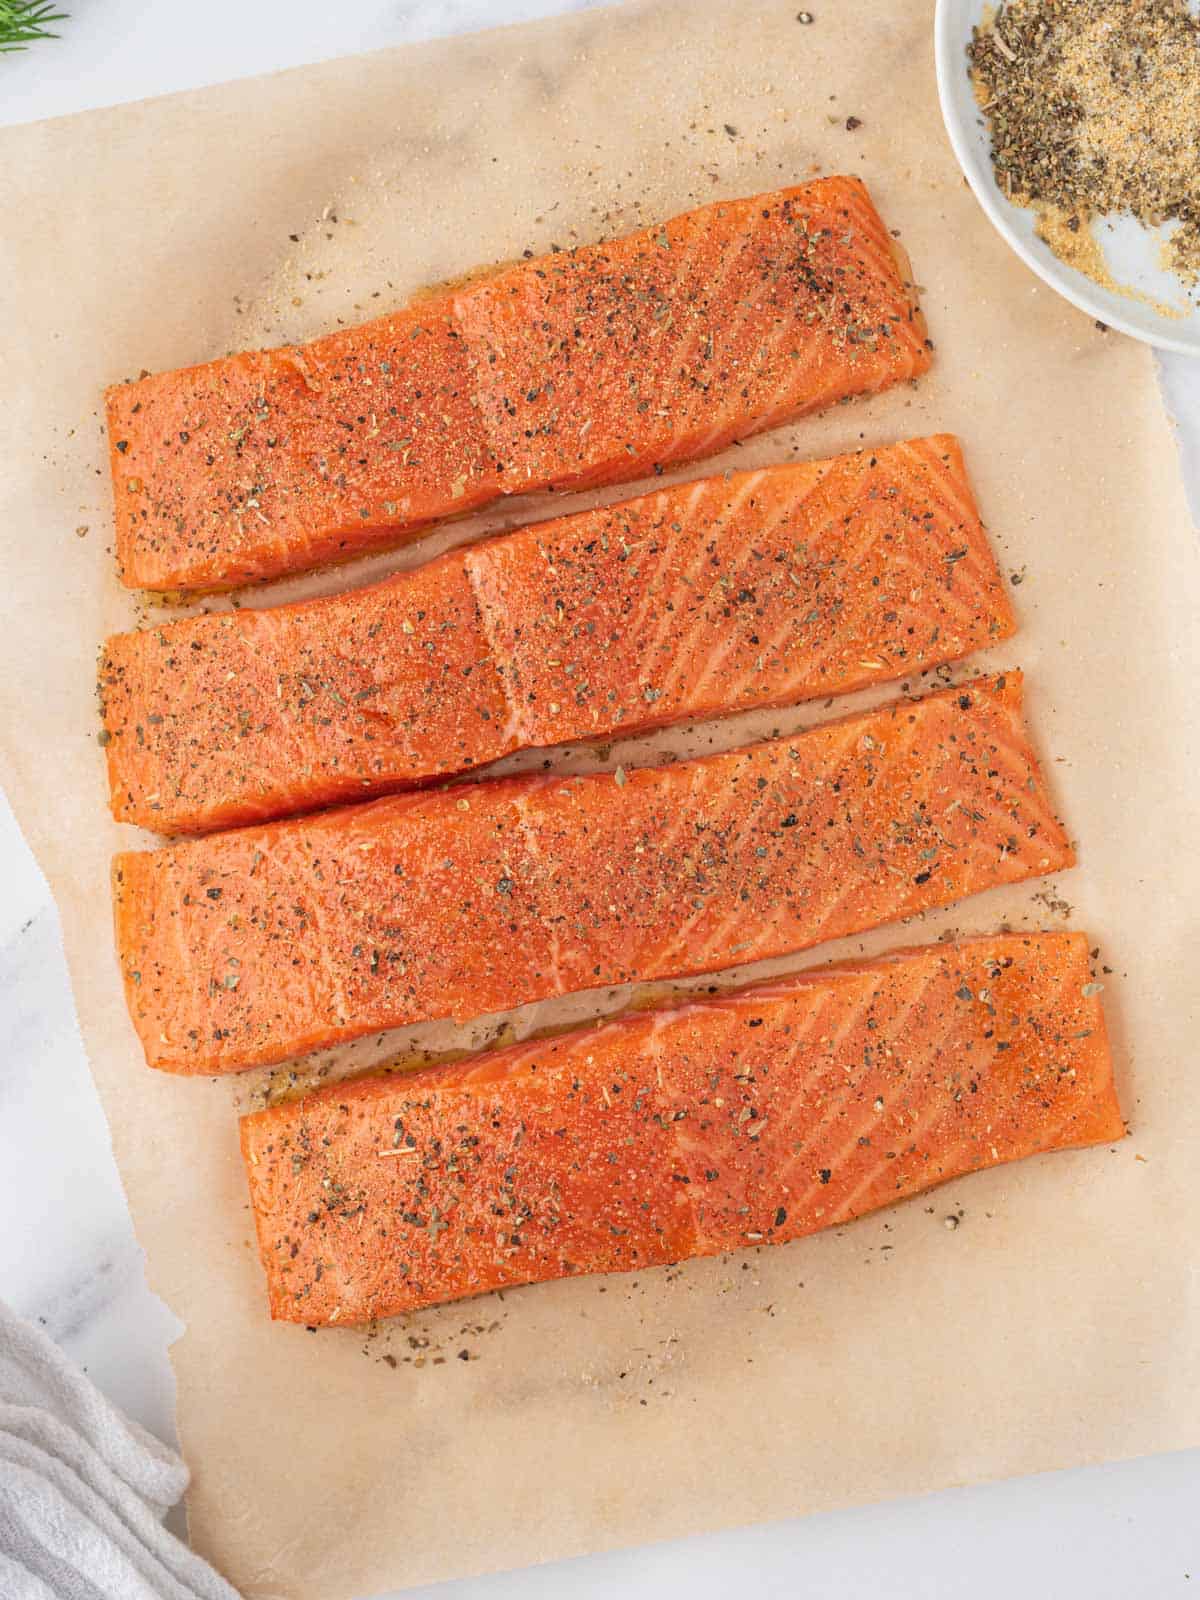 Salmon fillets seasoned.